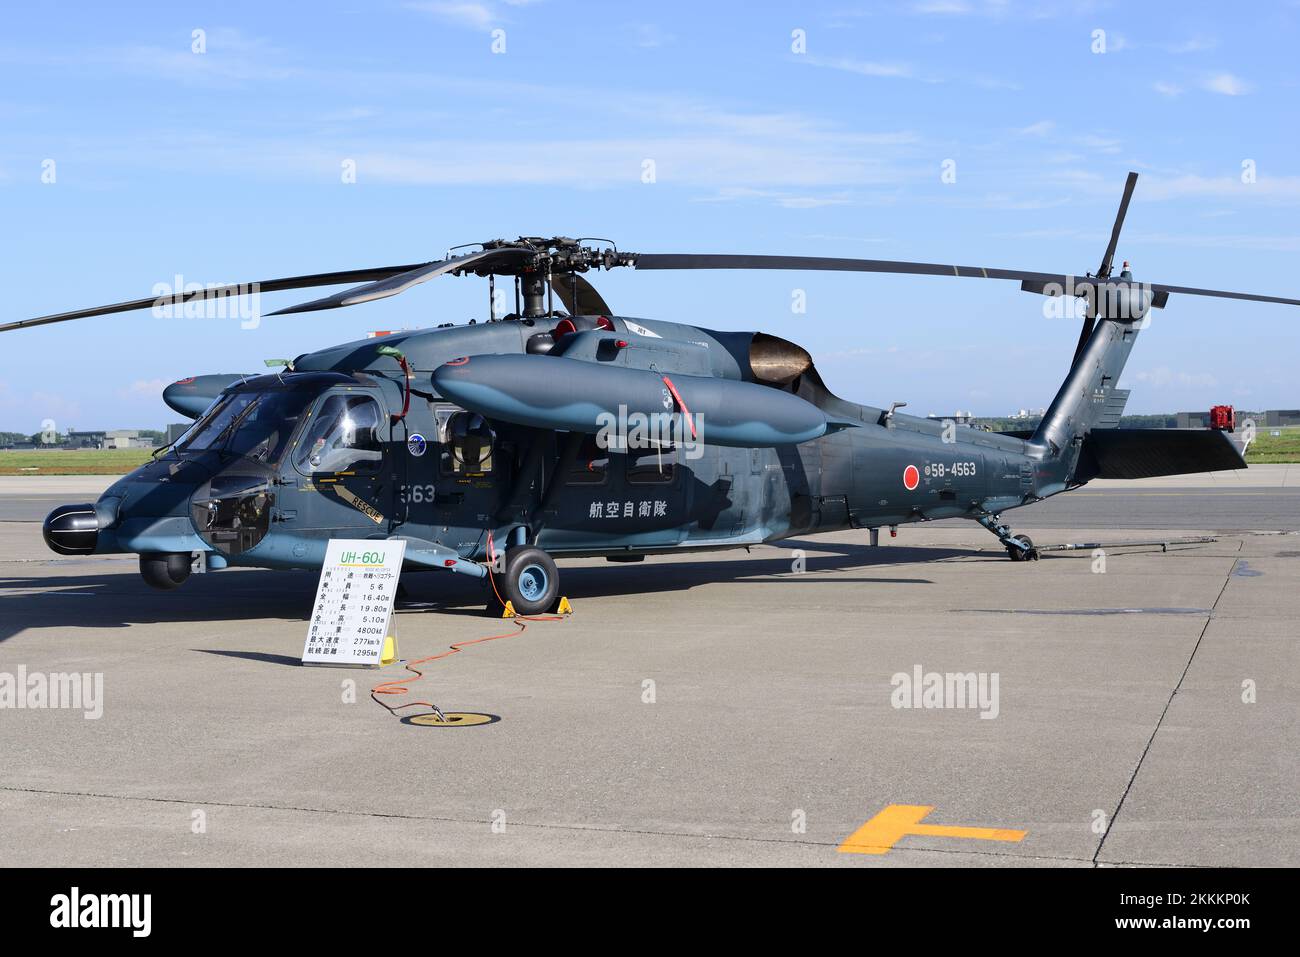 Préfecture d'Aomori, Japon - 07 septembre 2014 : hélicoptère de recherche et de sauvetage Sikorsky UH-60J de la Force aérienne japonaise d'autodéfense. Banque D'Images